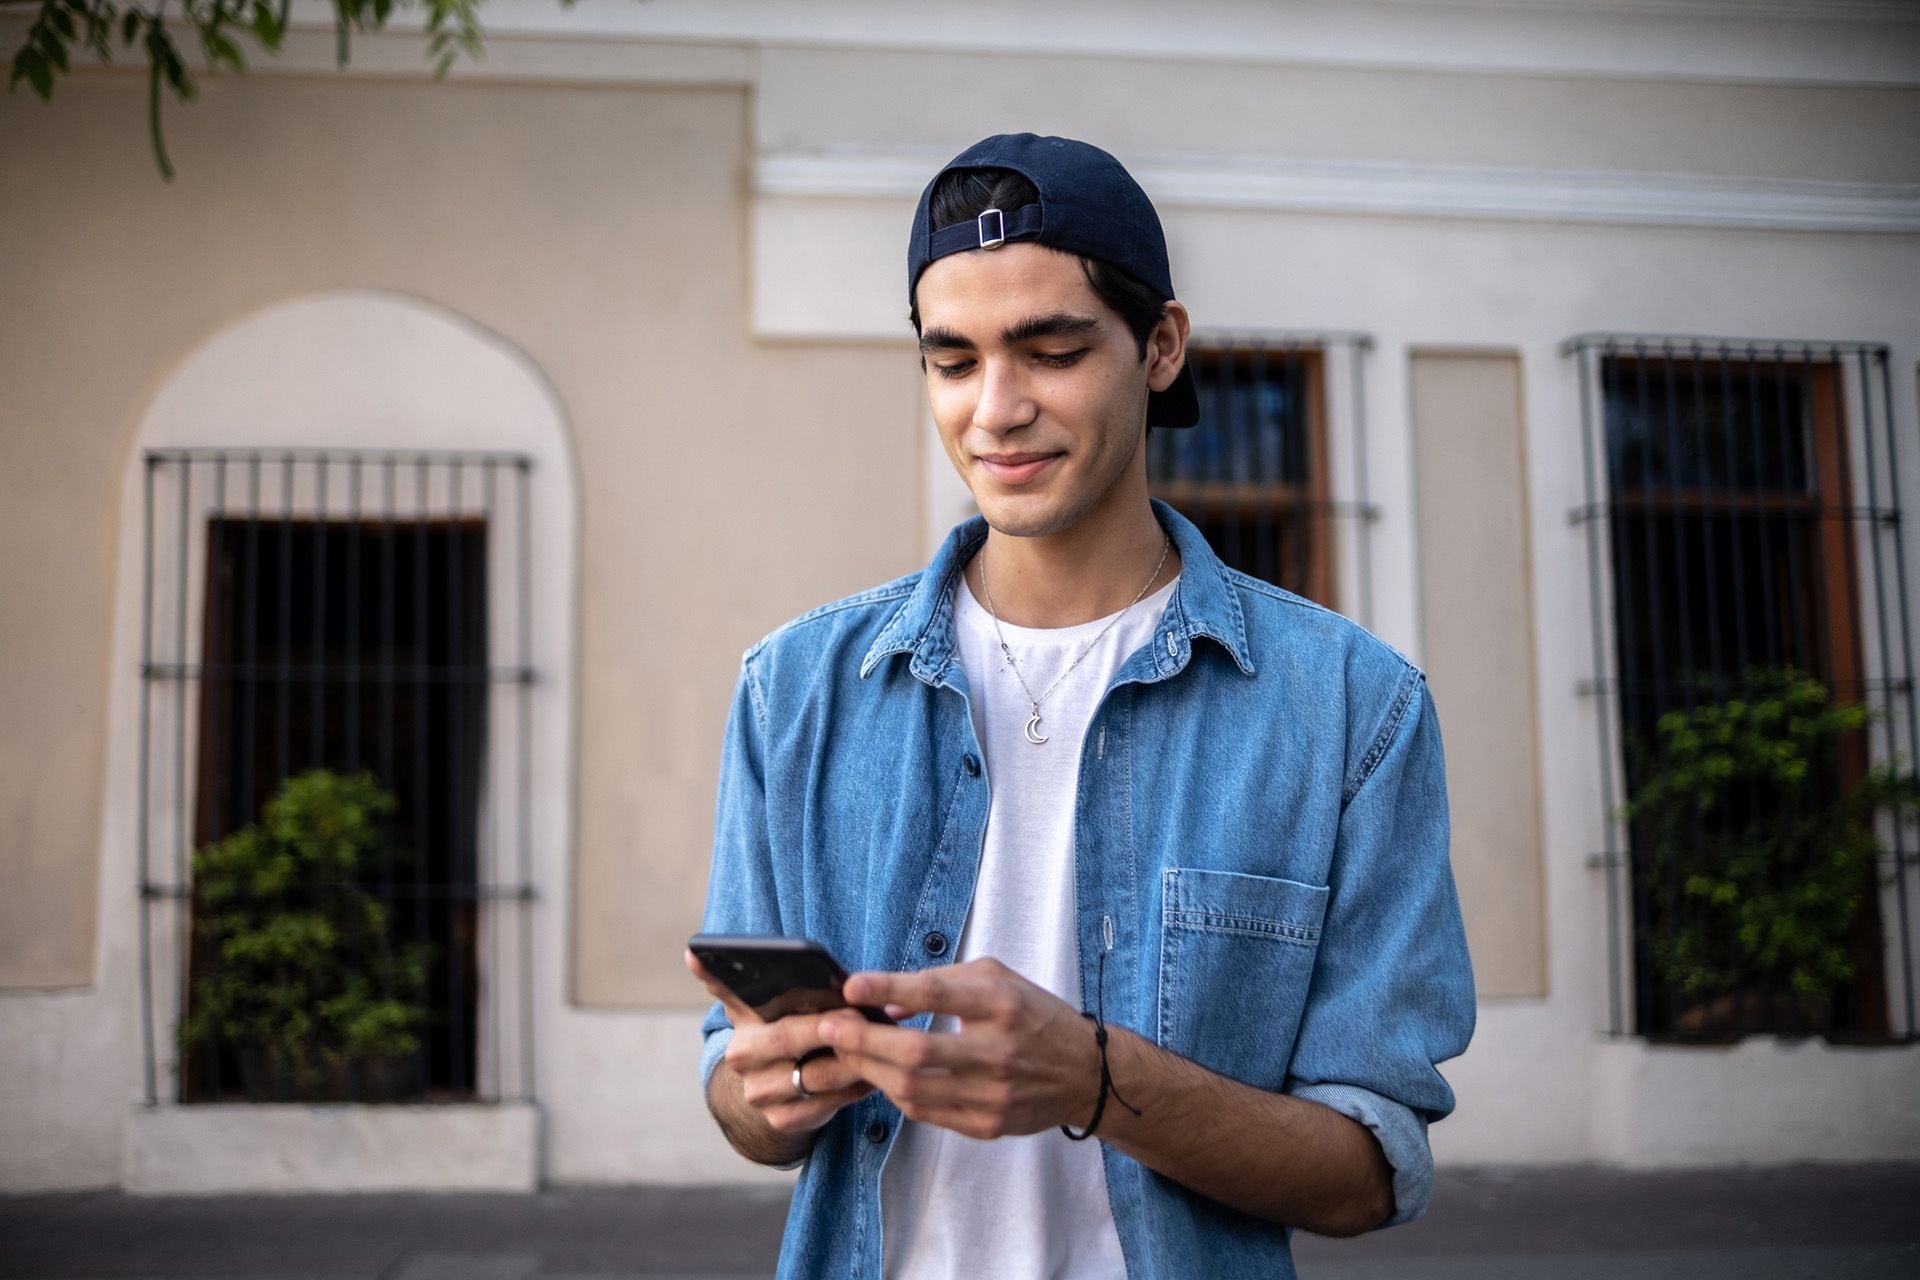  El uso excesivo de teléfonos inteligentes y redes sociales está relacionado con tasas crecientes de depresión y autolesiones en adolescentes. Crédito: Getty